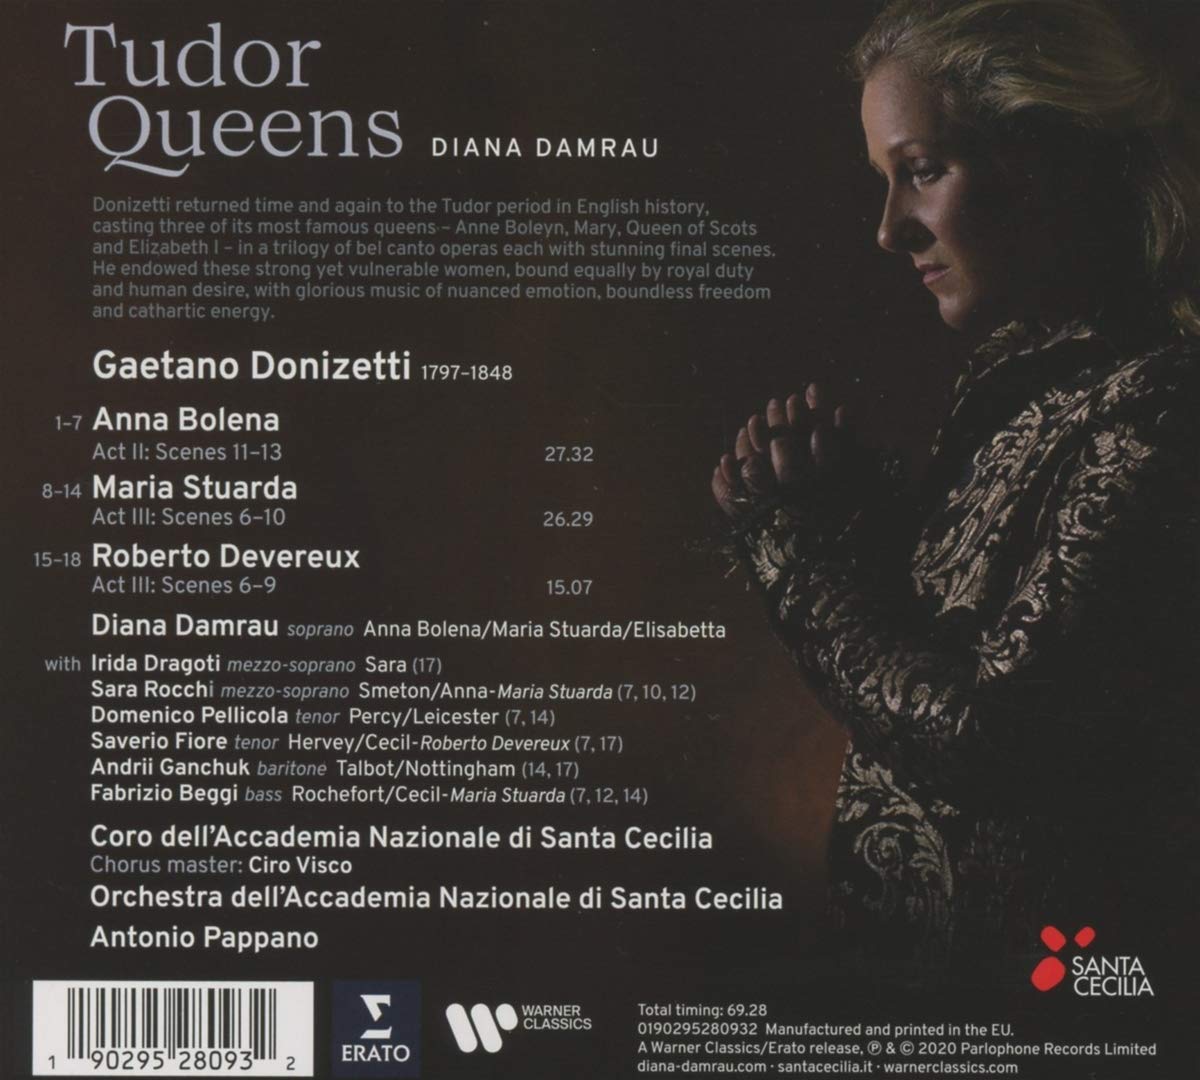 Diana Damrau 도니제티: 오페라 하이라이트 - 디아나 담라우 (The Tudor Queens) 